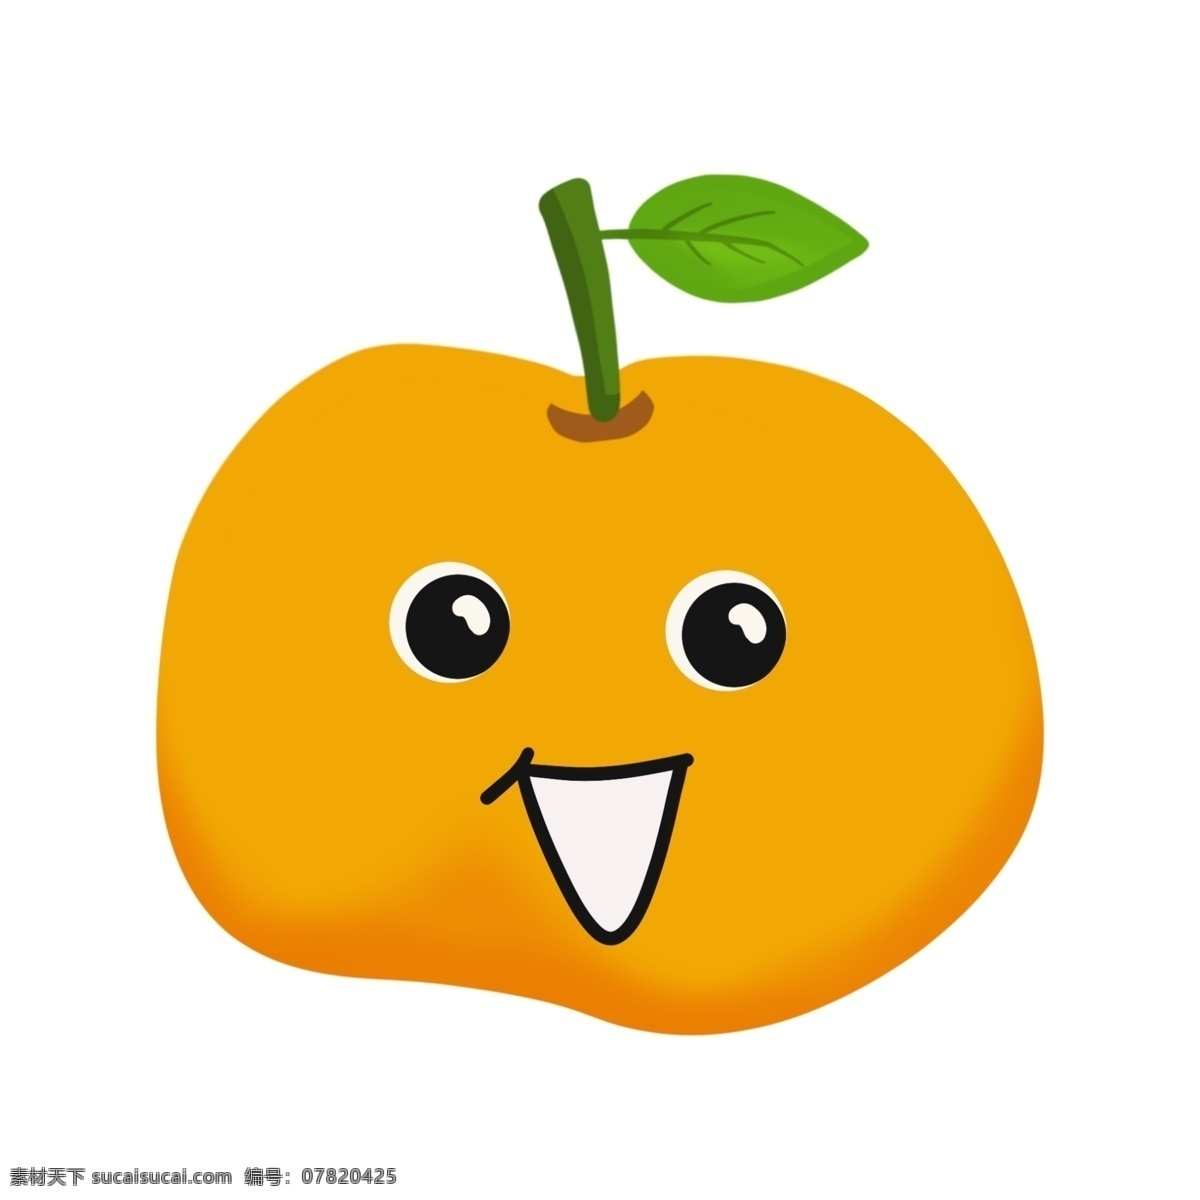 开心 可爱 橙子 插图 微笑 笑脸 开心快乐 开心的橙子 可爱的橙子 开心的水果 笑脸橙子